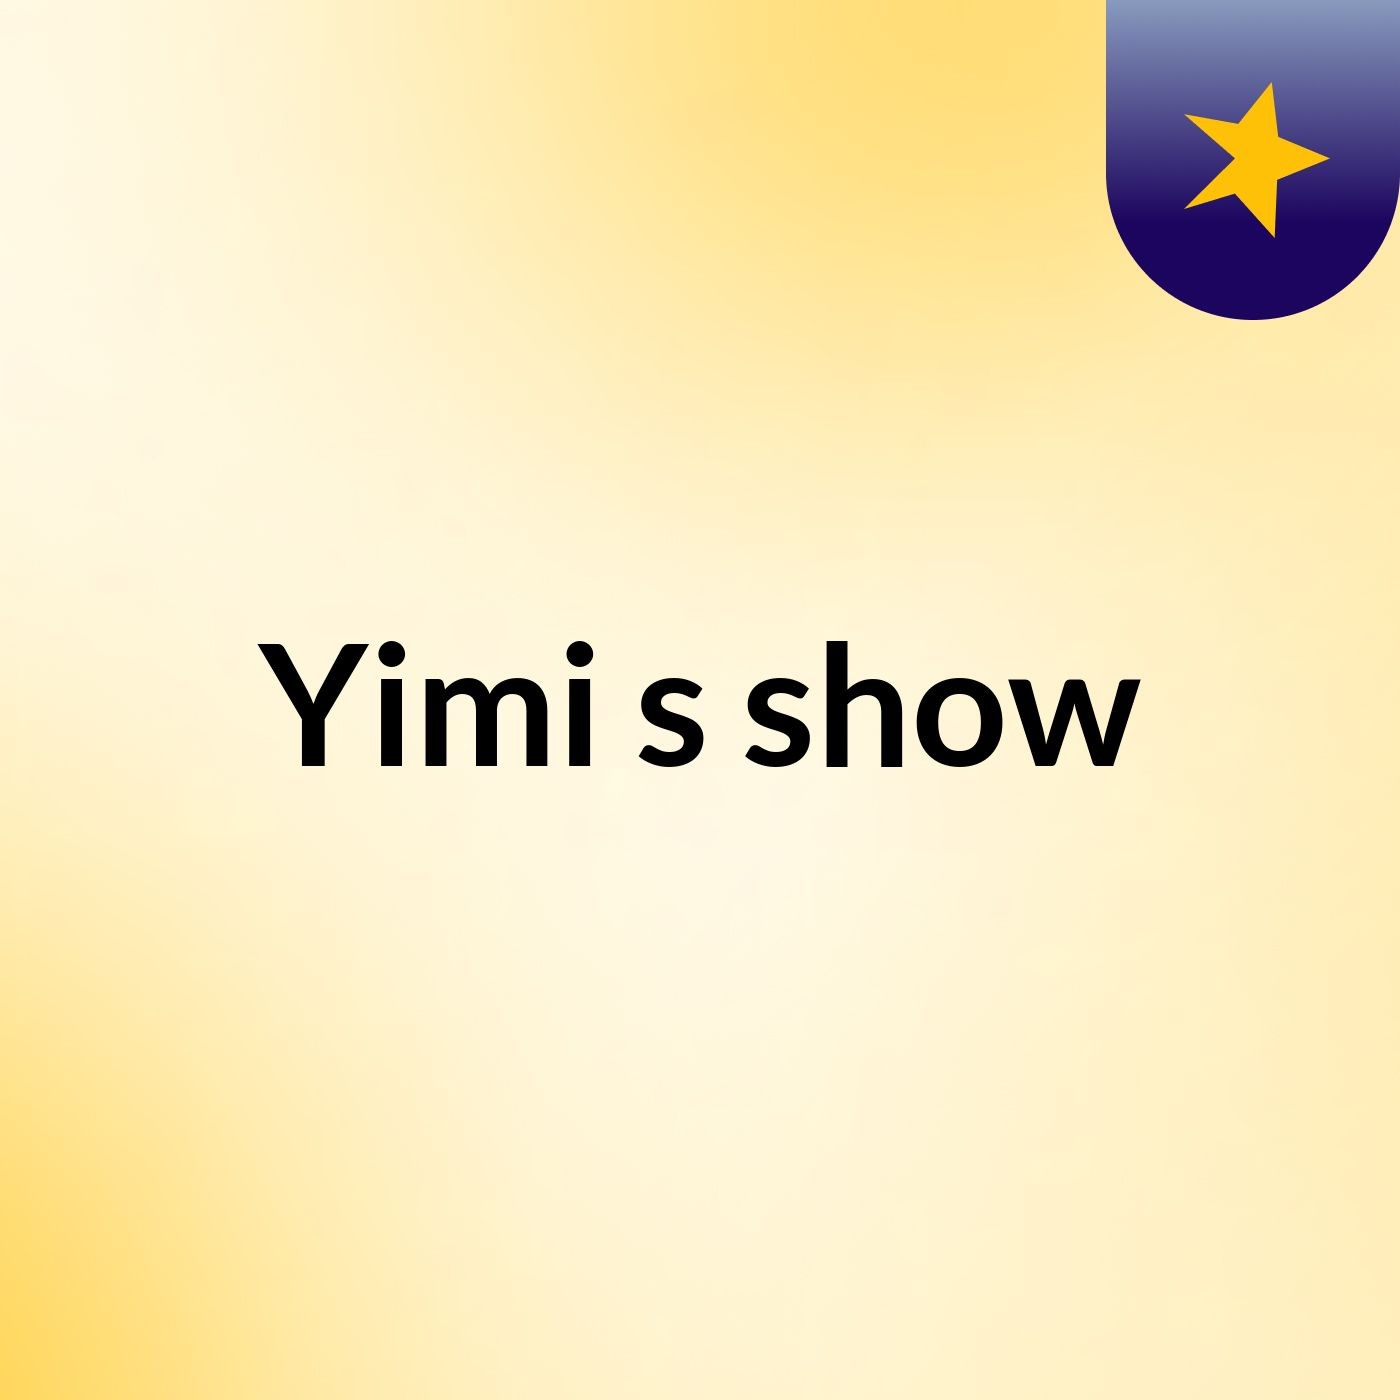 Yimi's show